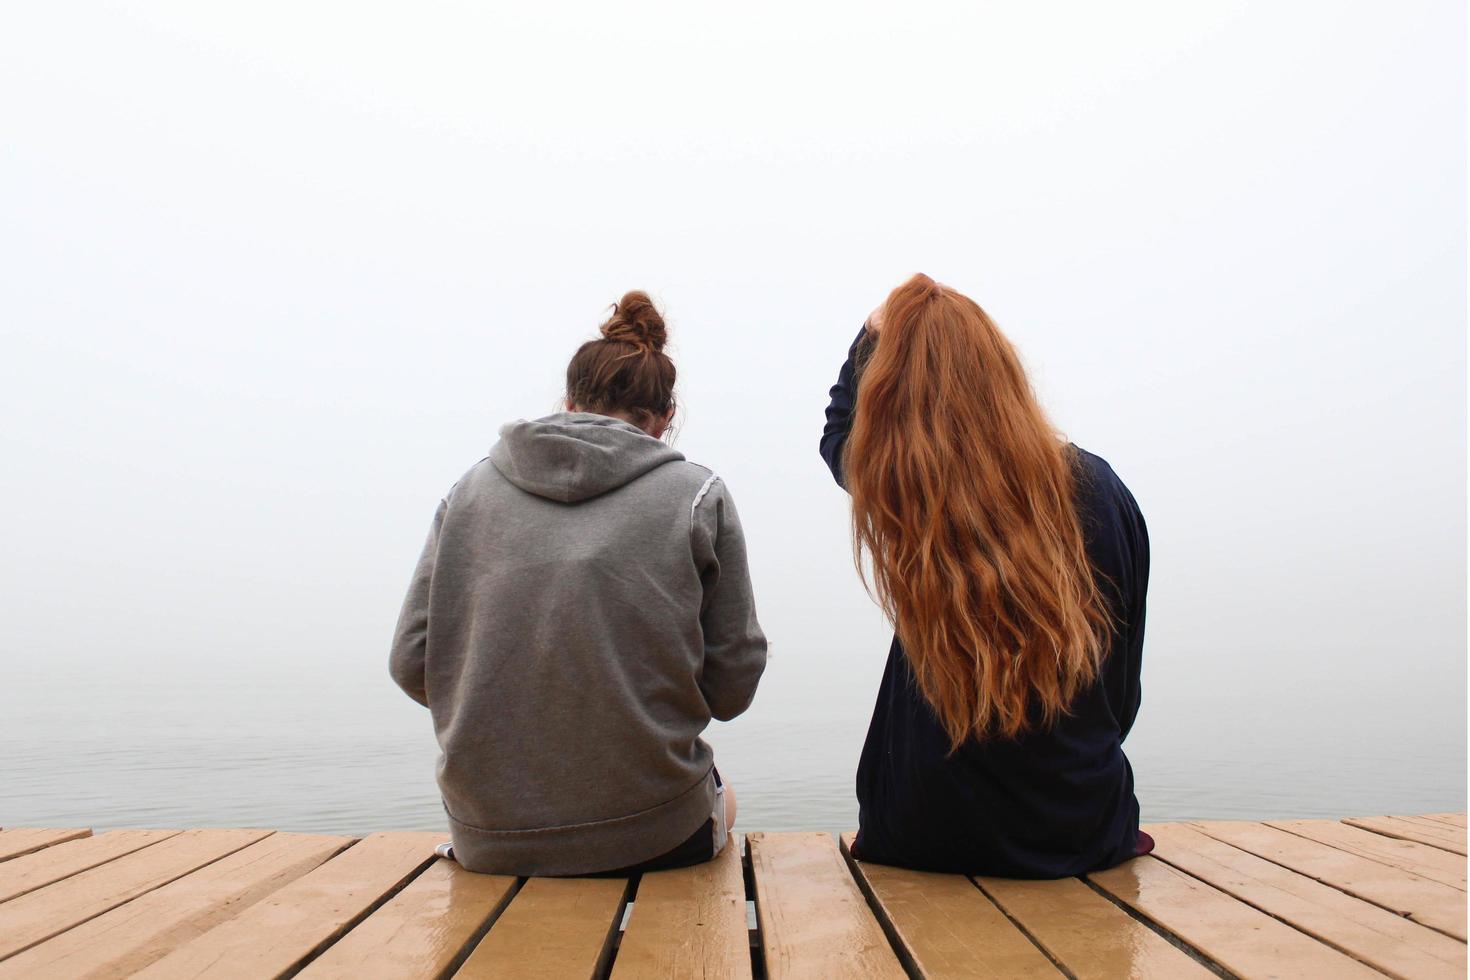 deux femmes assises sur une jetée en bois photo